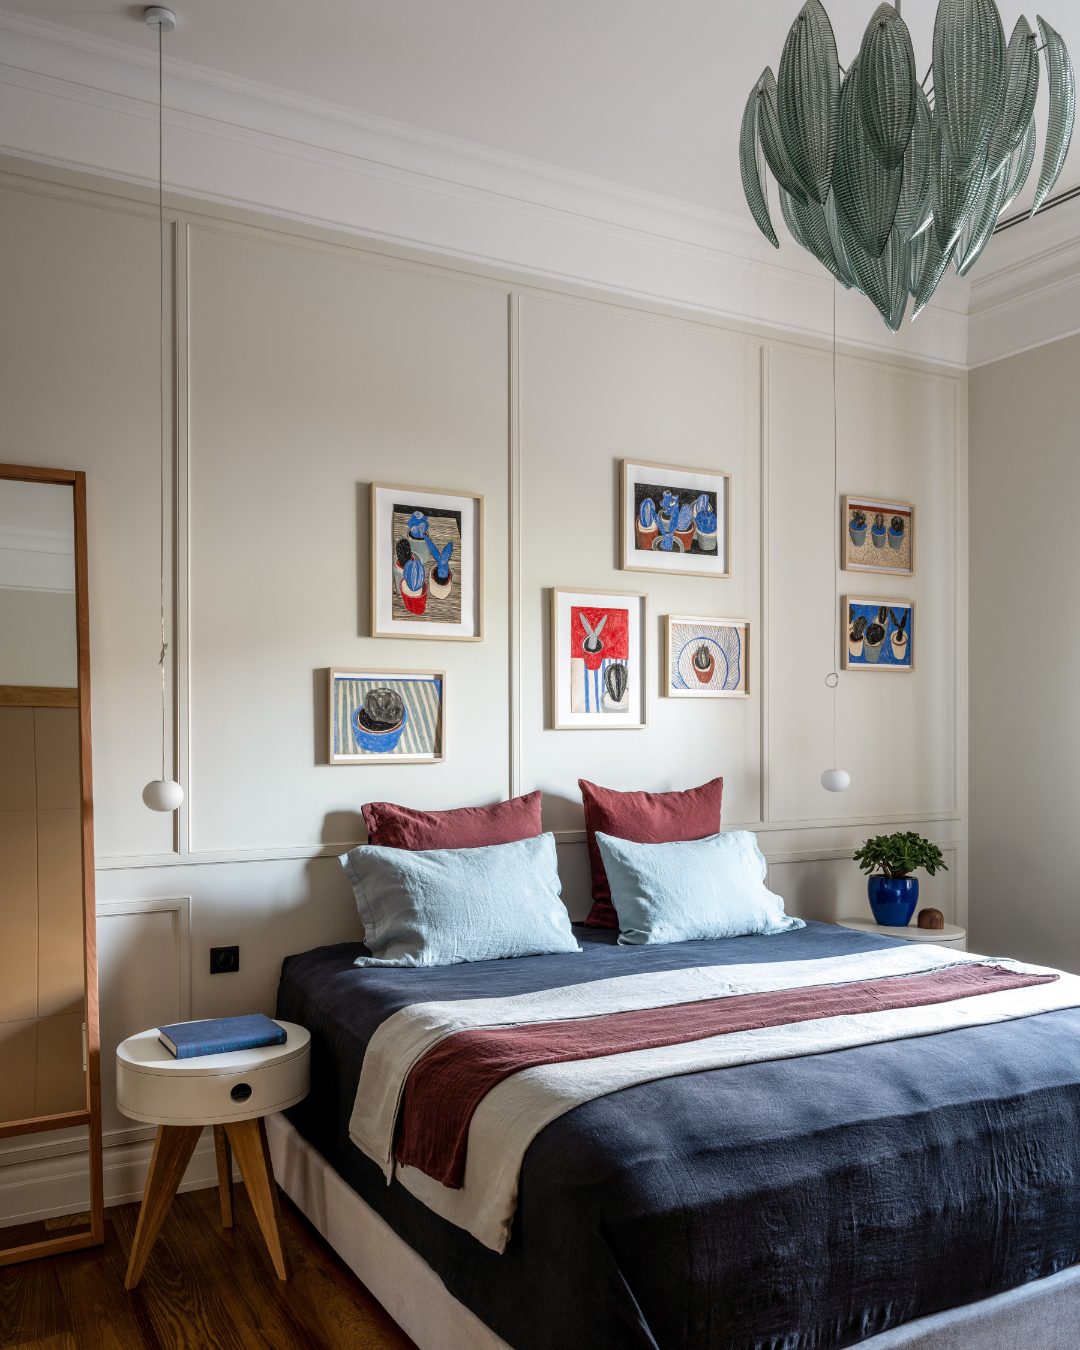 Dormitorio en tonos azules, blancos y rojos